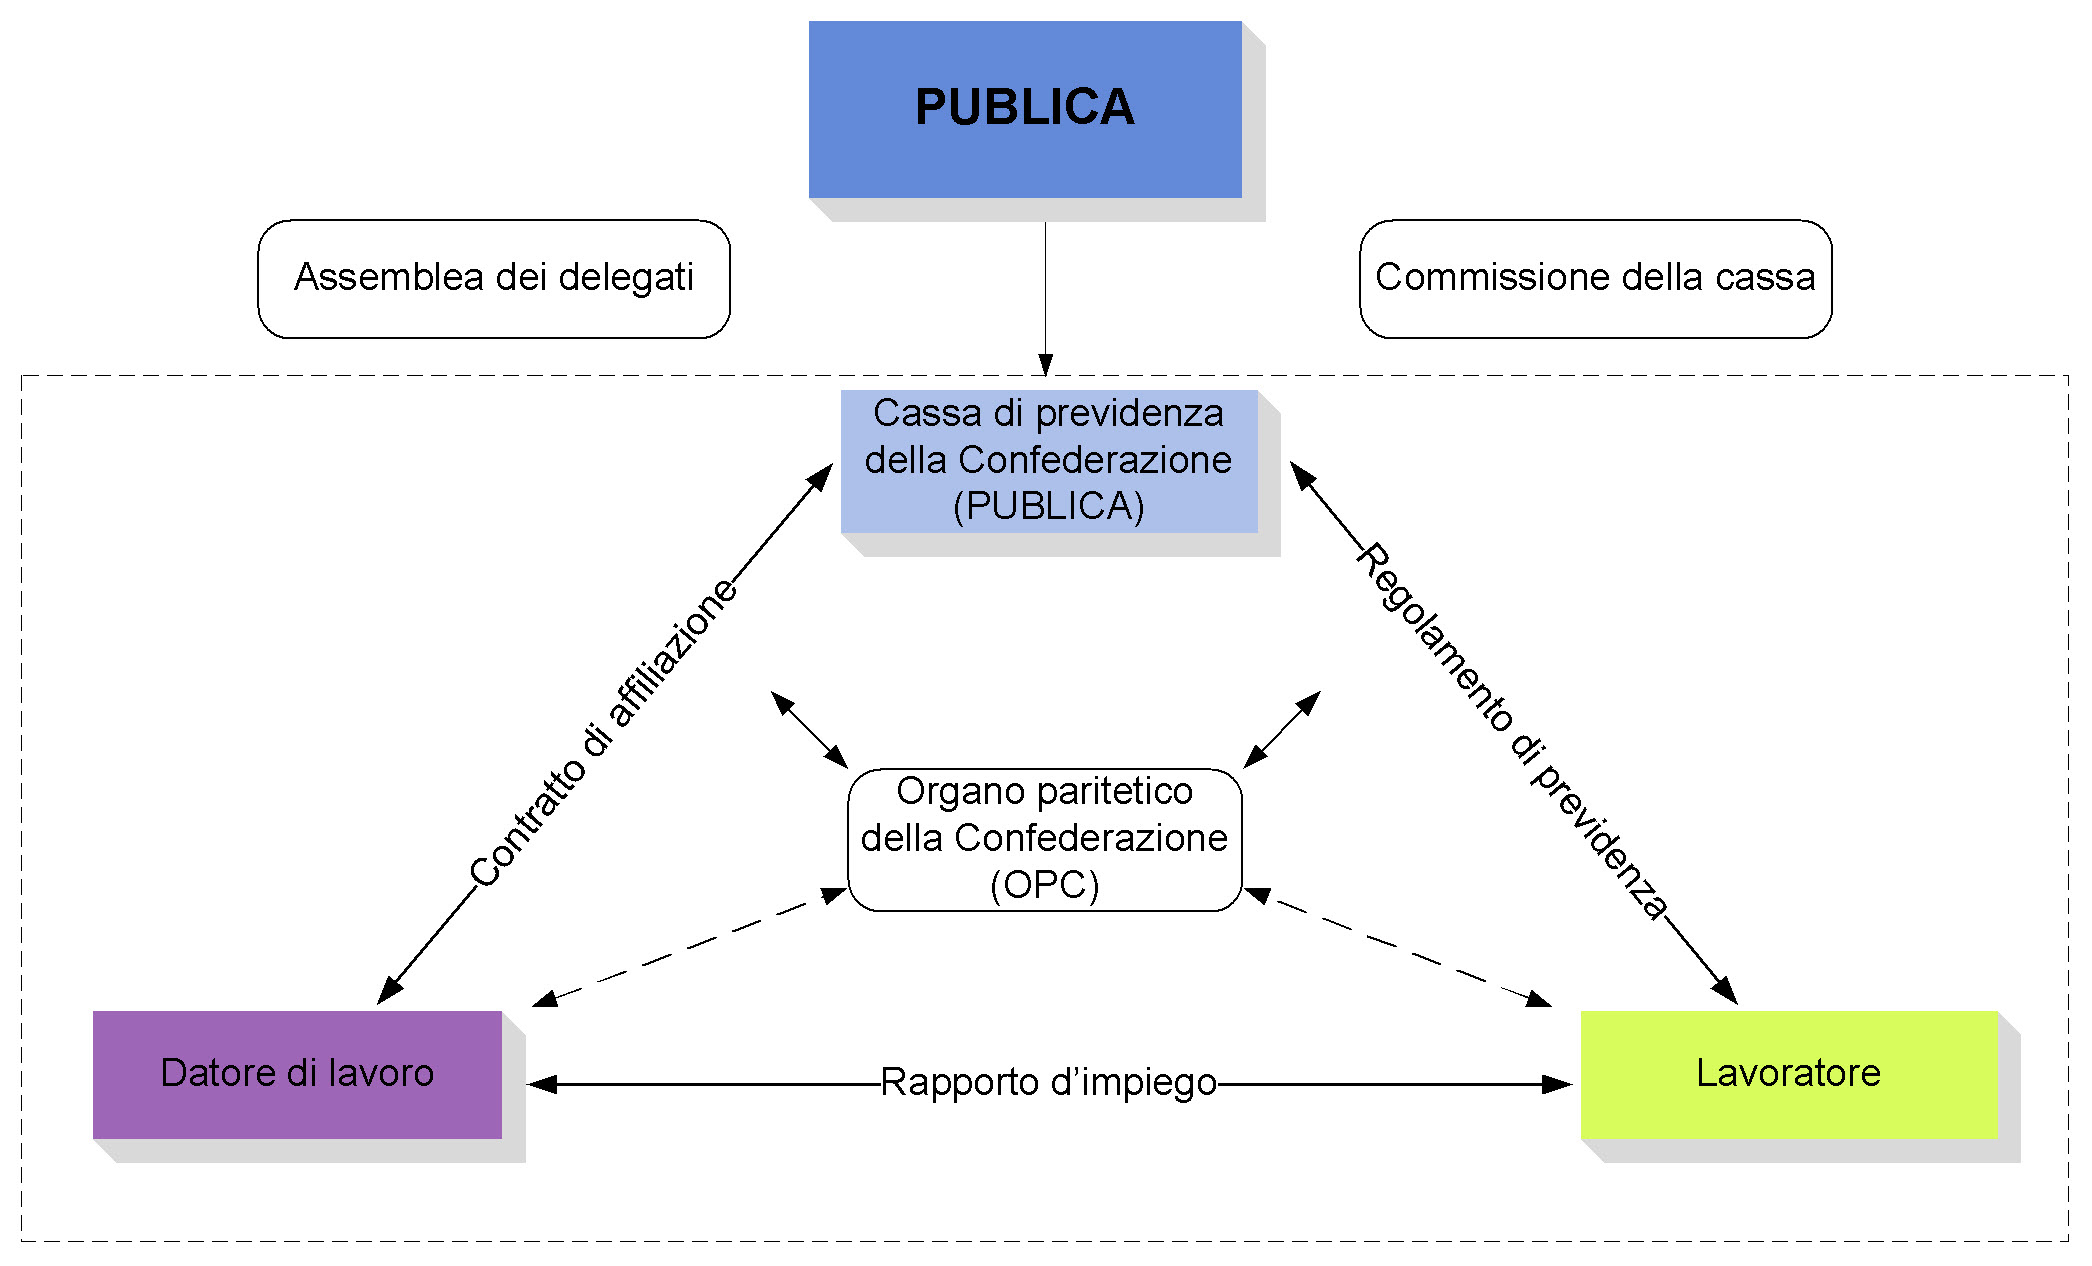 PUBLICA - Organizzazione e struttura